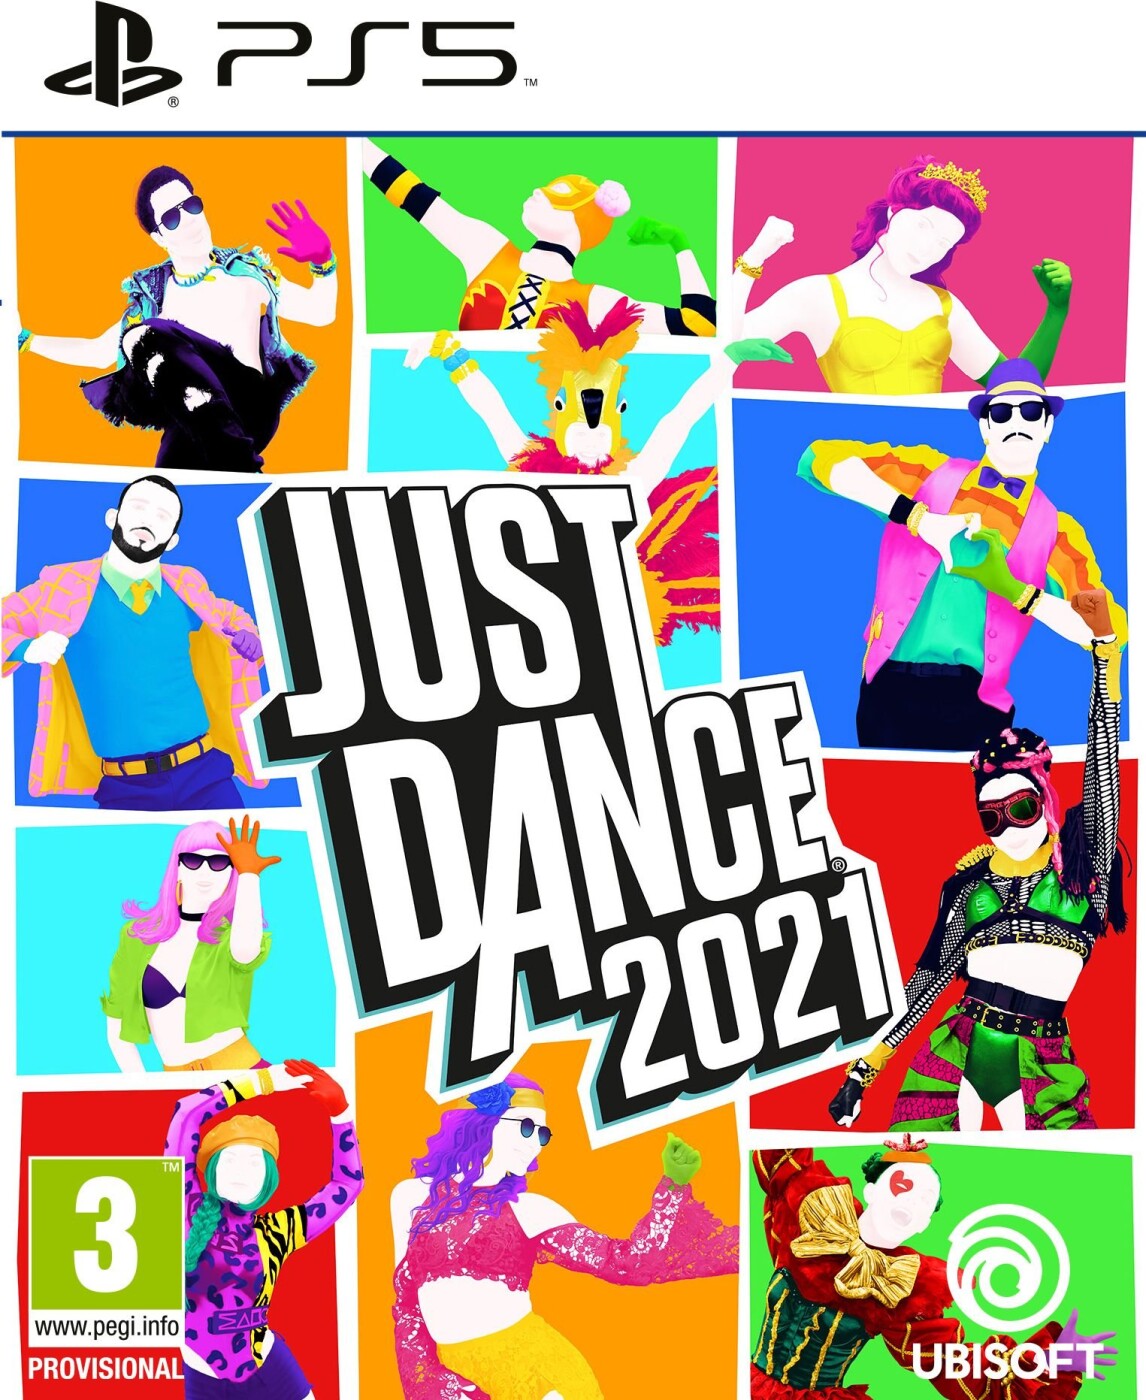 Aggressiv enhed forum Just Dance 2021 ps5 → Køb billigt her - Gucca.dk